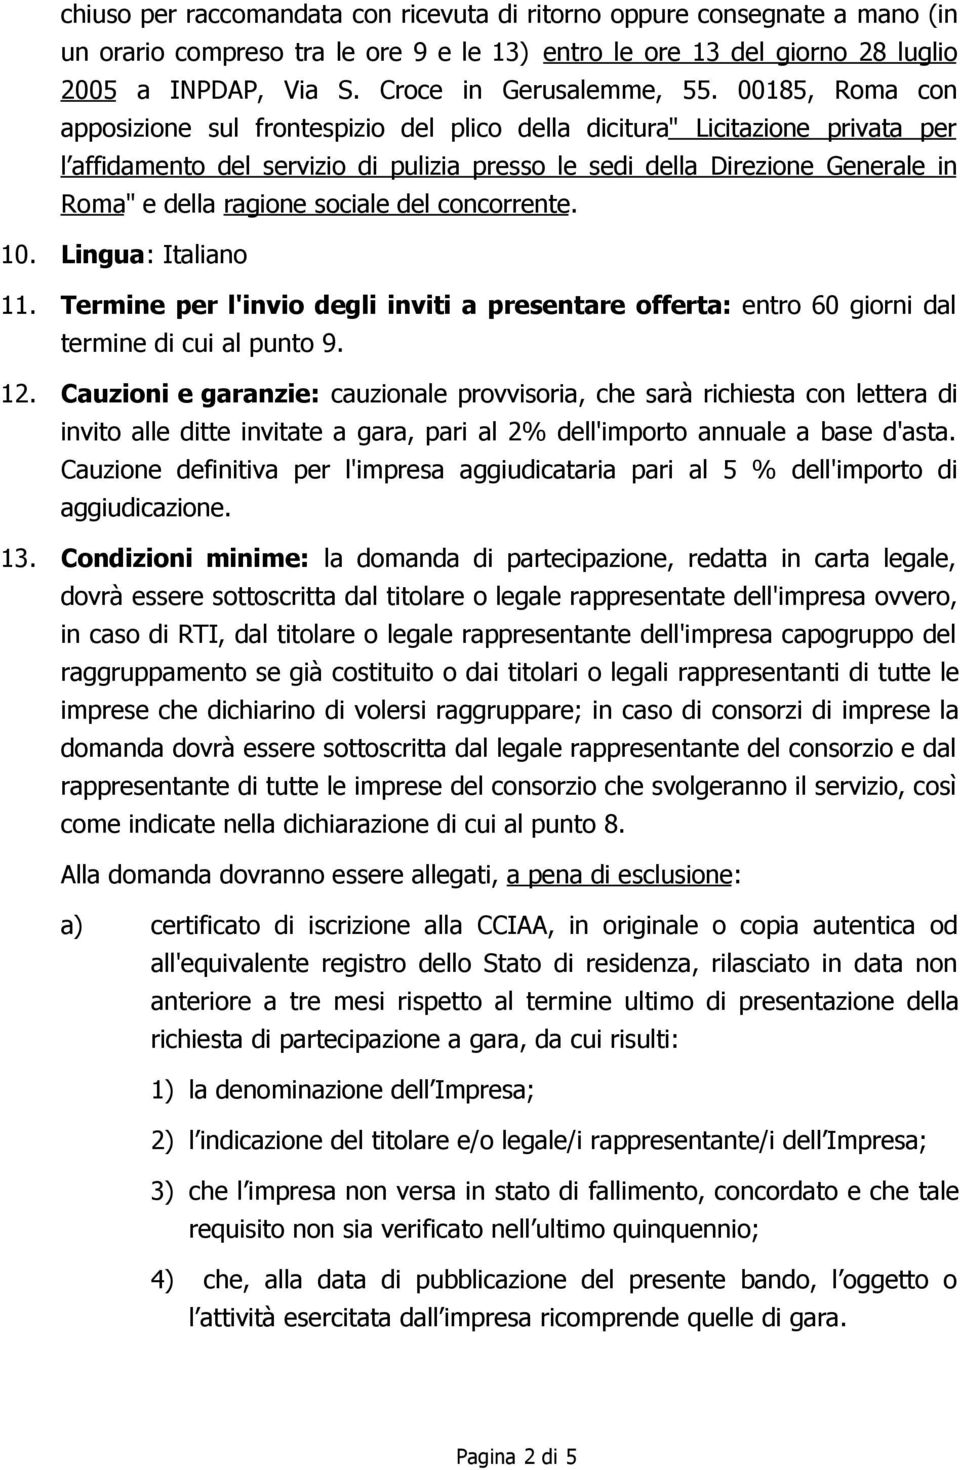 00185, Roma con apposizione sul frontespizio del plico della dicitura" Licitazione privata per l affidamento del servizio di pulizia presso le sedi della Direzione Generale in Roma" e della ragione